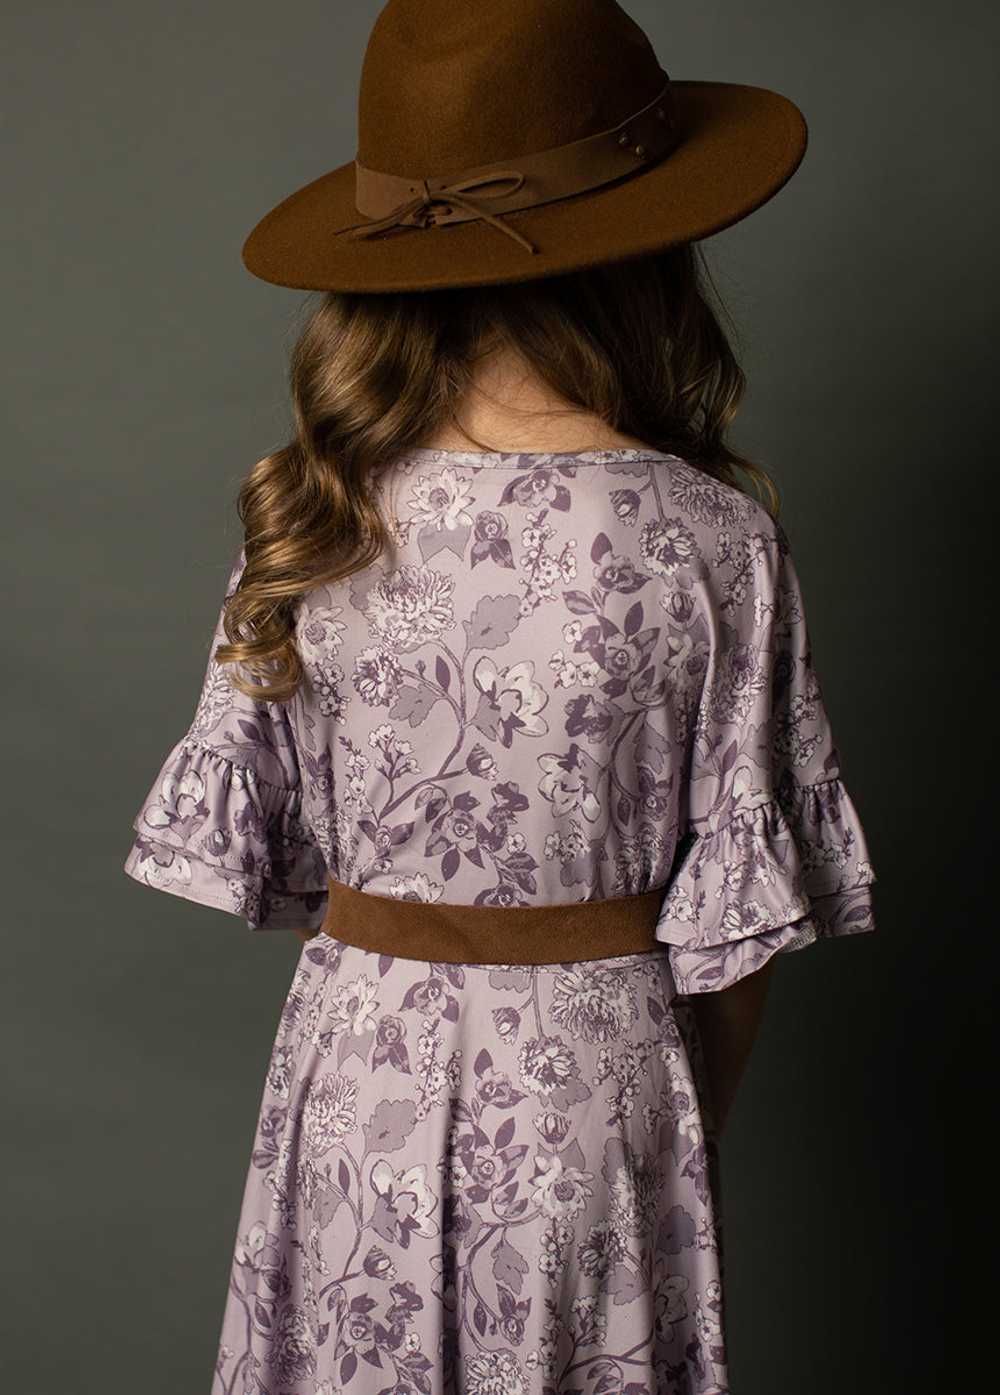 Joyfolie Emilia Dress in Lavender Floral - image 4